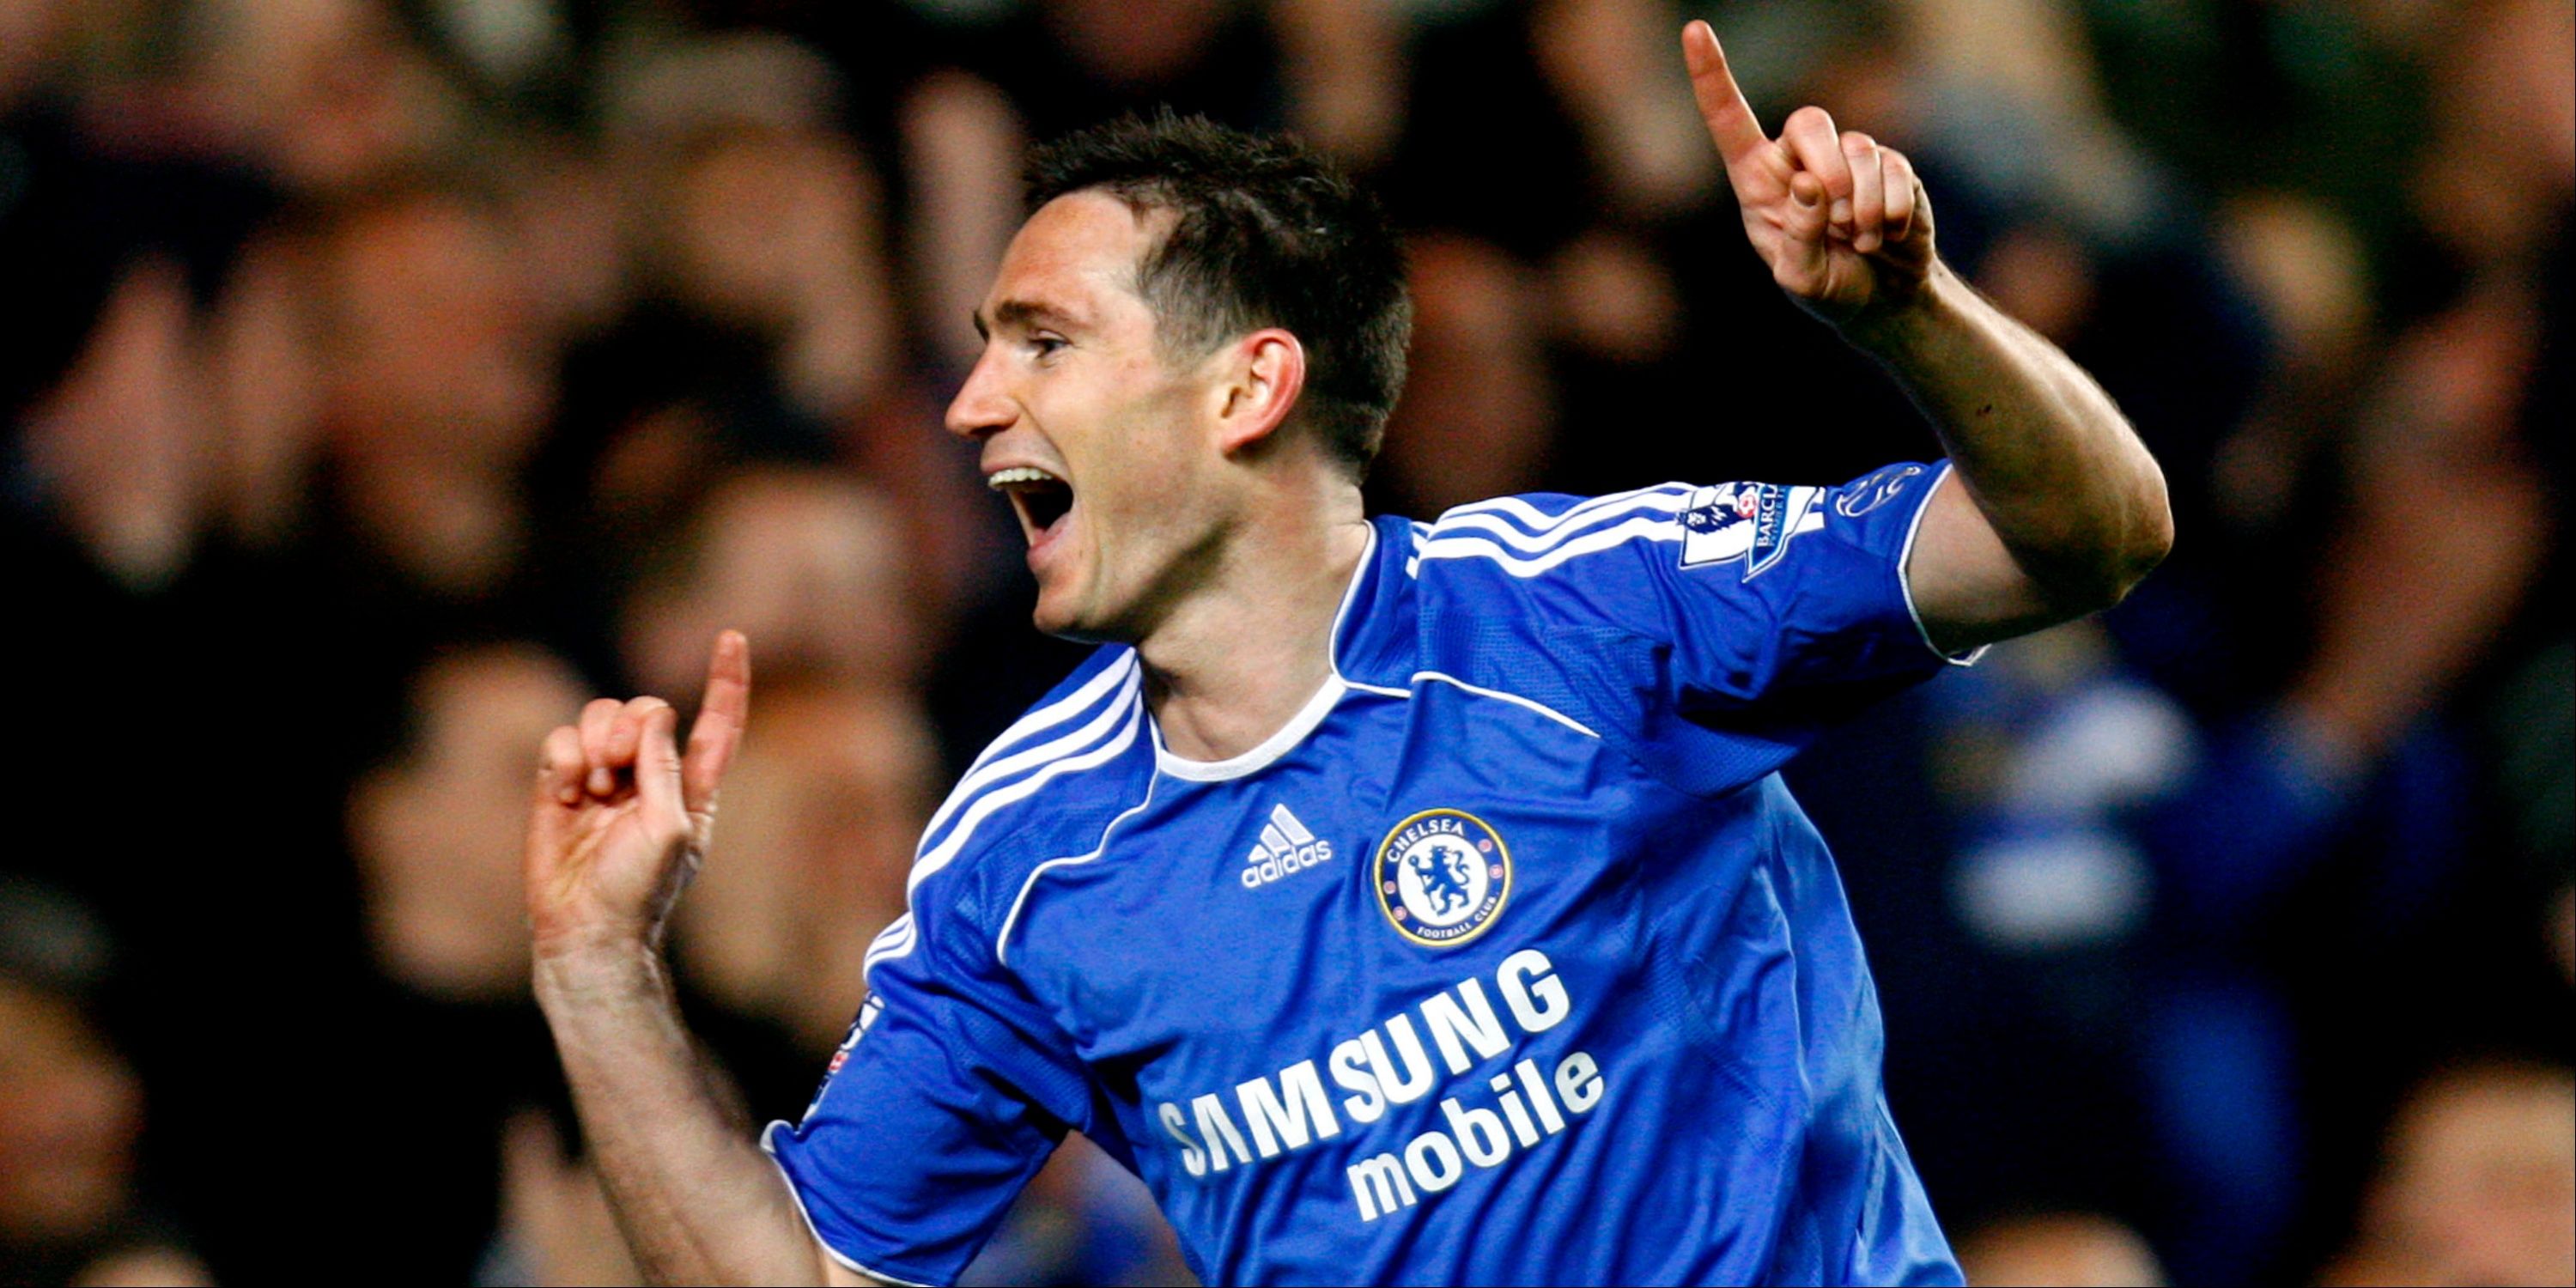 Chelsea's Frank Lampard